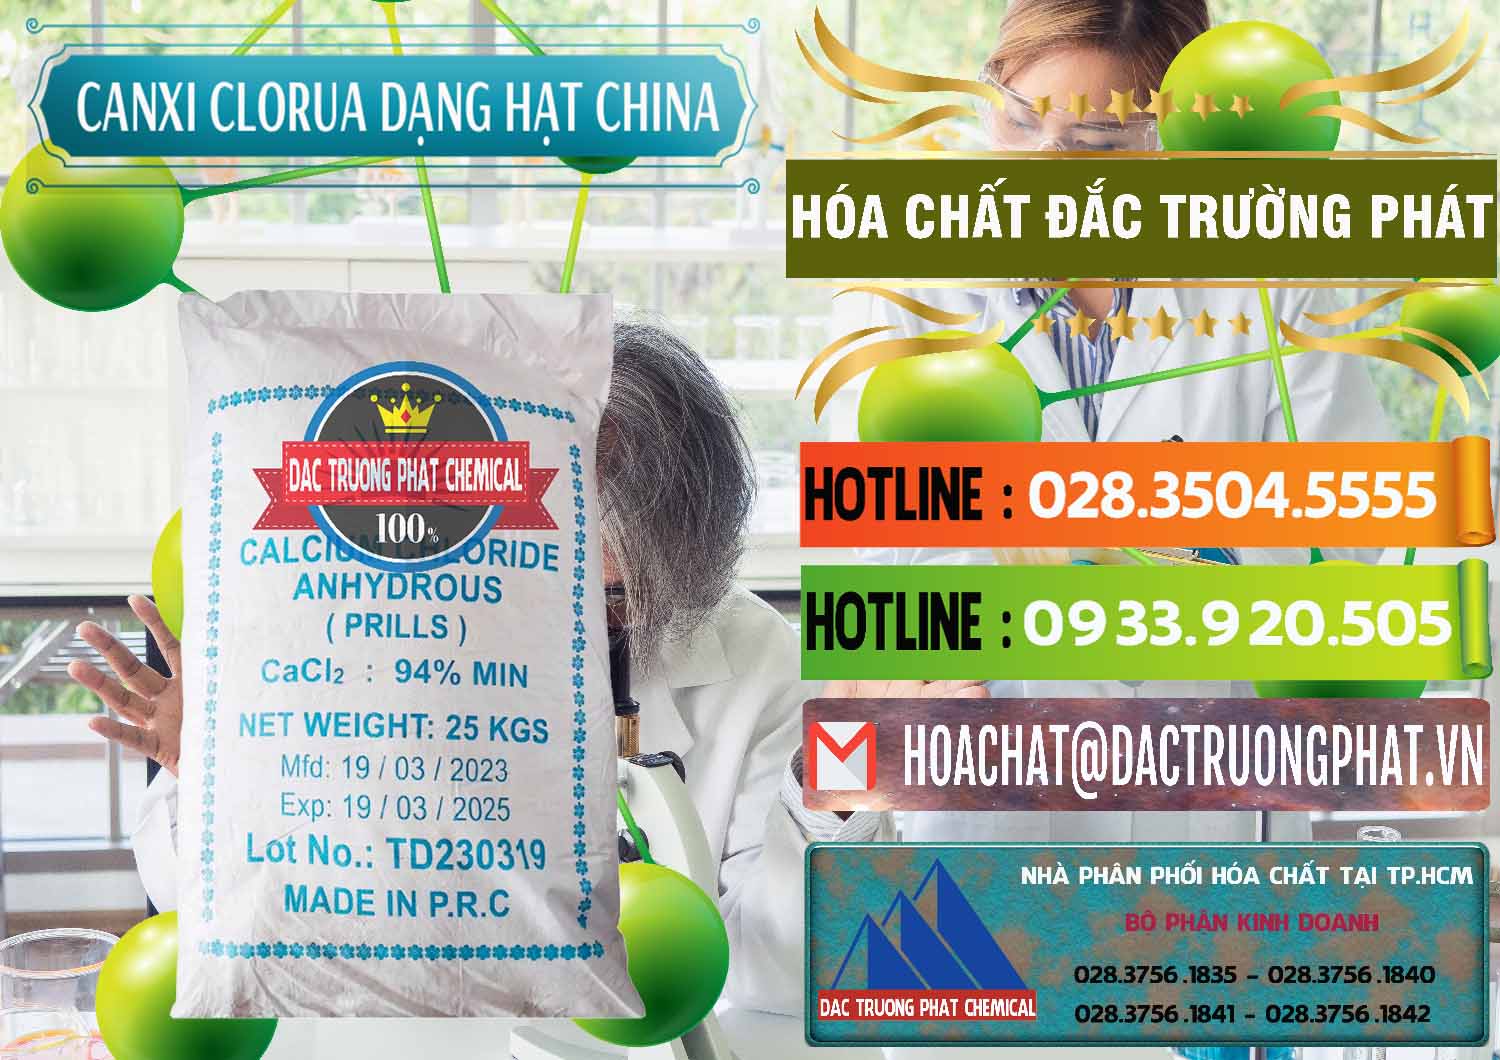 Cty kinh doanh và bán CaCl2 – Canxi Clorua 94% Dạng Hạt Trung Quốc China - 0373 - Chuyên phân phối _ cung cấp hóa chất tại TP.HCM - cungcaphoachat.com.vn